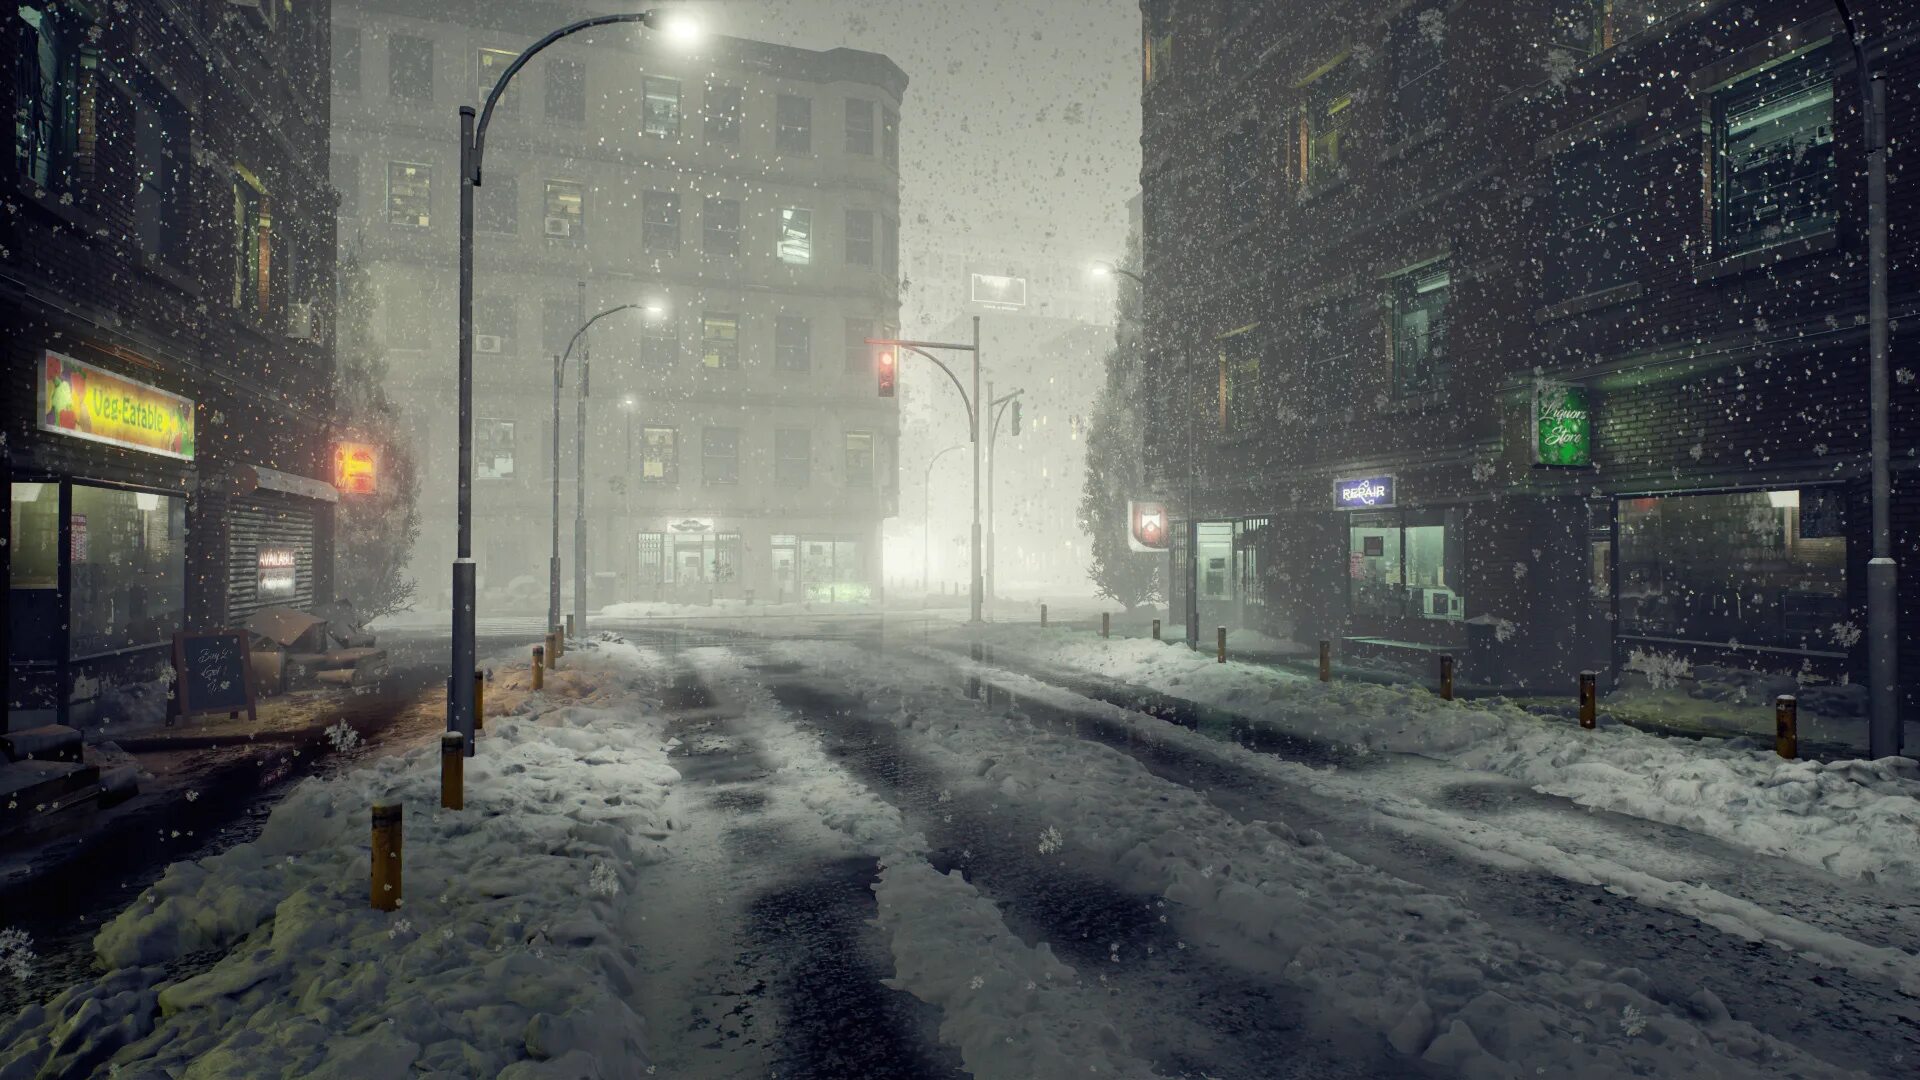 Звук улицы утром. Зимний город. Заснеженный город. Зимняя улица. Мрачная зима в городе.